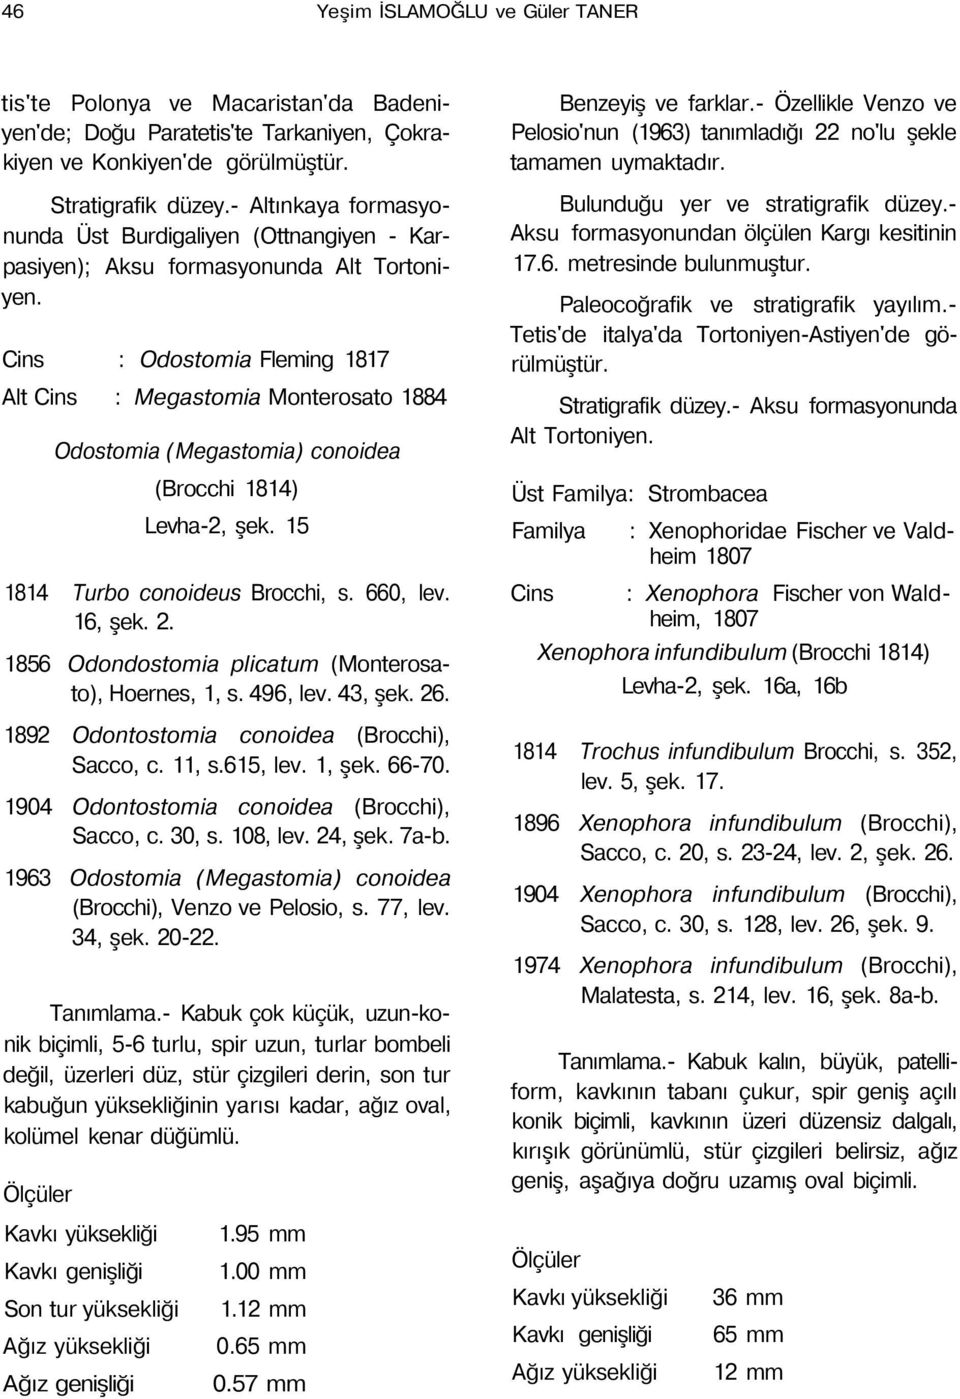 1814) Levha-2, şek. 15 1814 Turbo conoideus Brocchi, s. 660, lev. 16, şek. 2. 1856 Odondostomia plicatum (Monterosato), Hoernes, 1, s. 496, lev. 43, şek. 26.